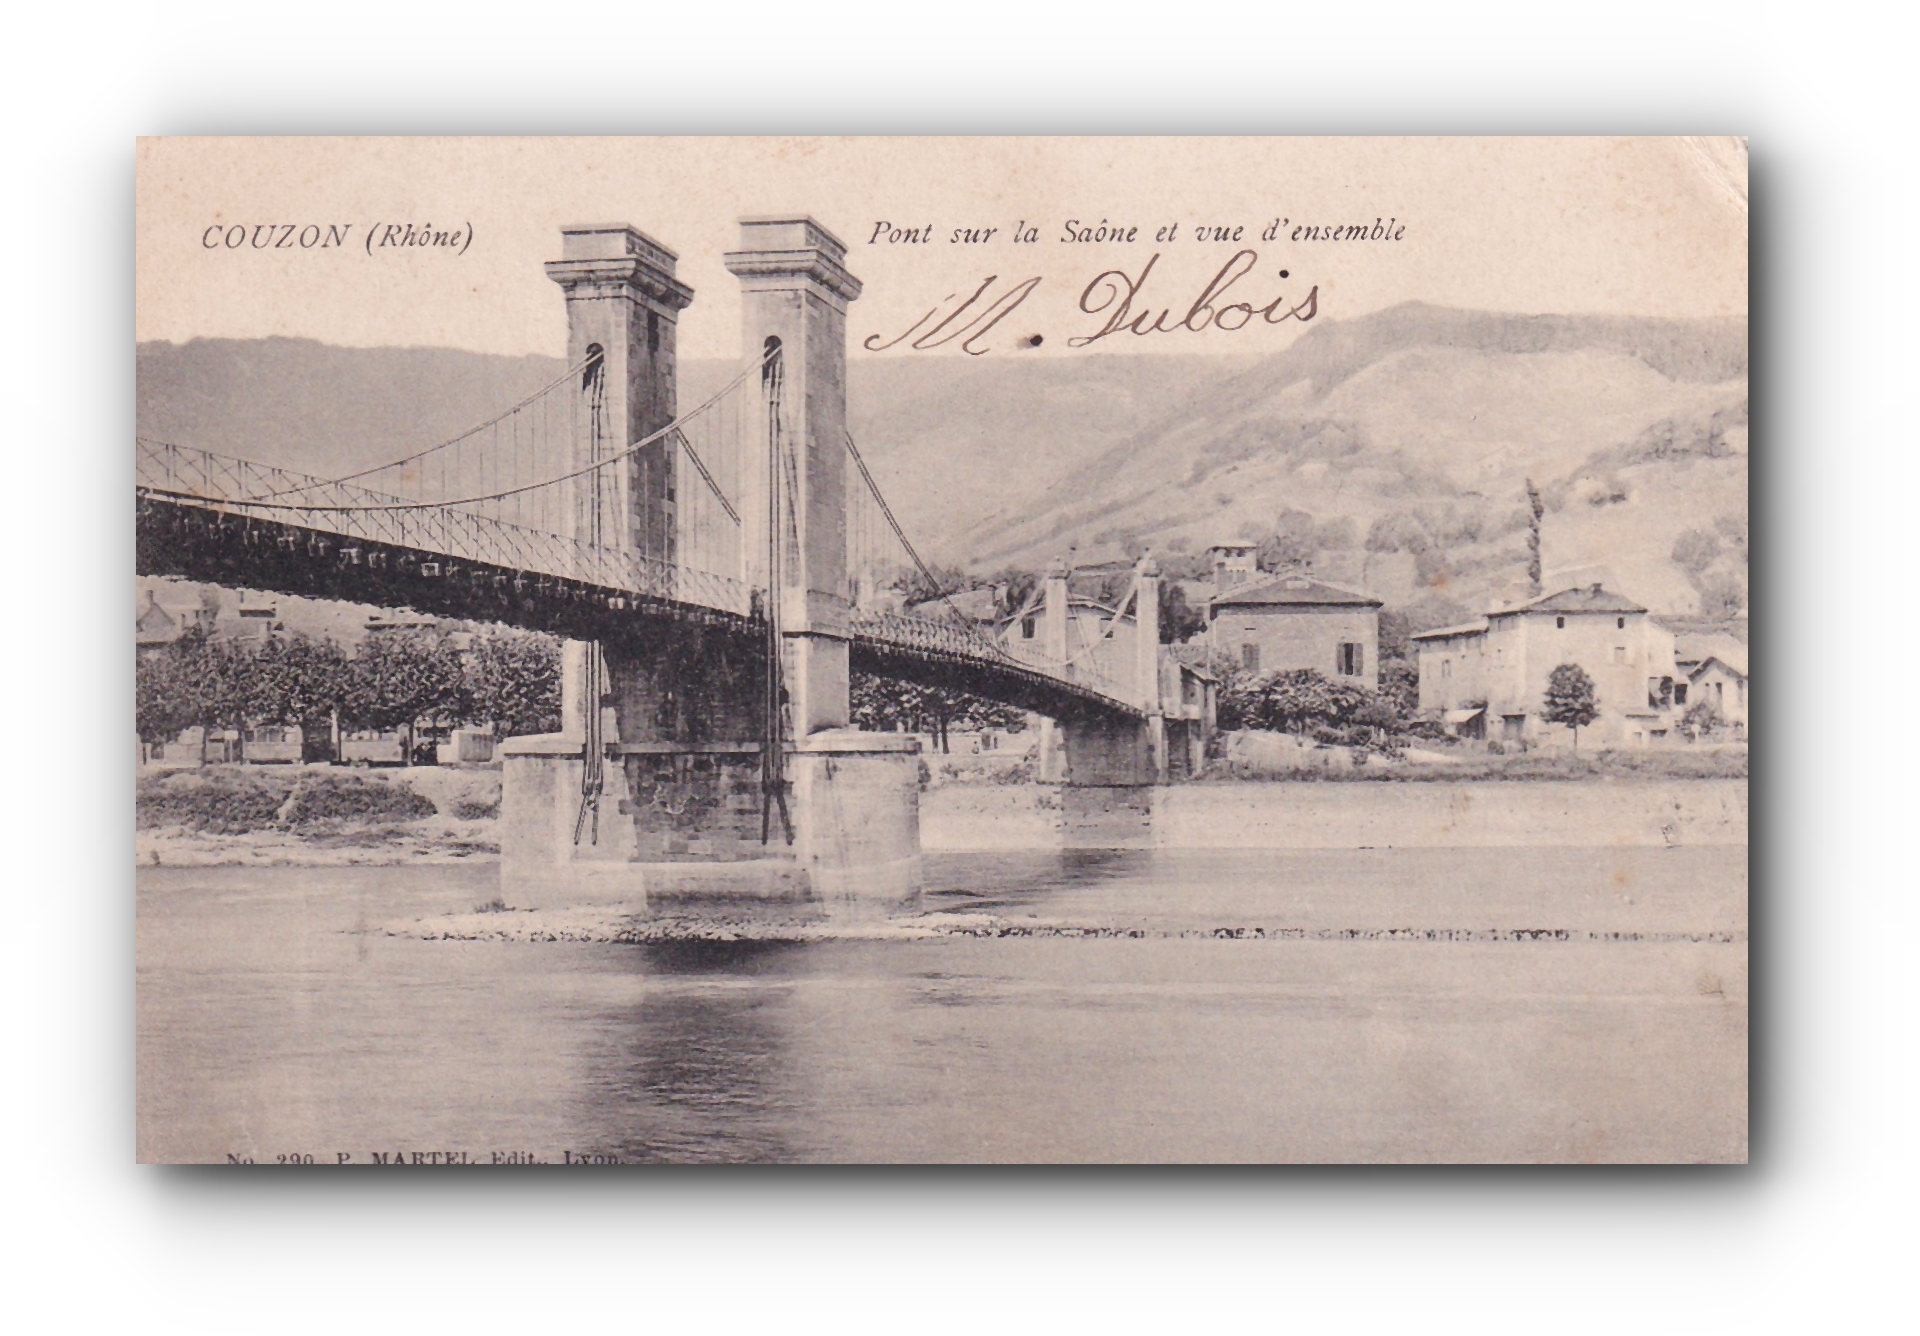 - Pont sur la Saône et vue d'ensemble - COUZON - 04.07.1904 -